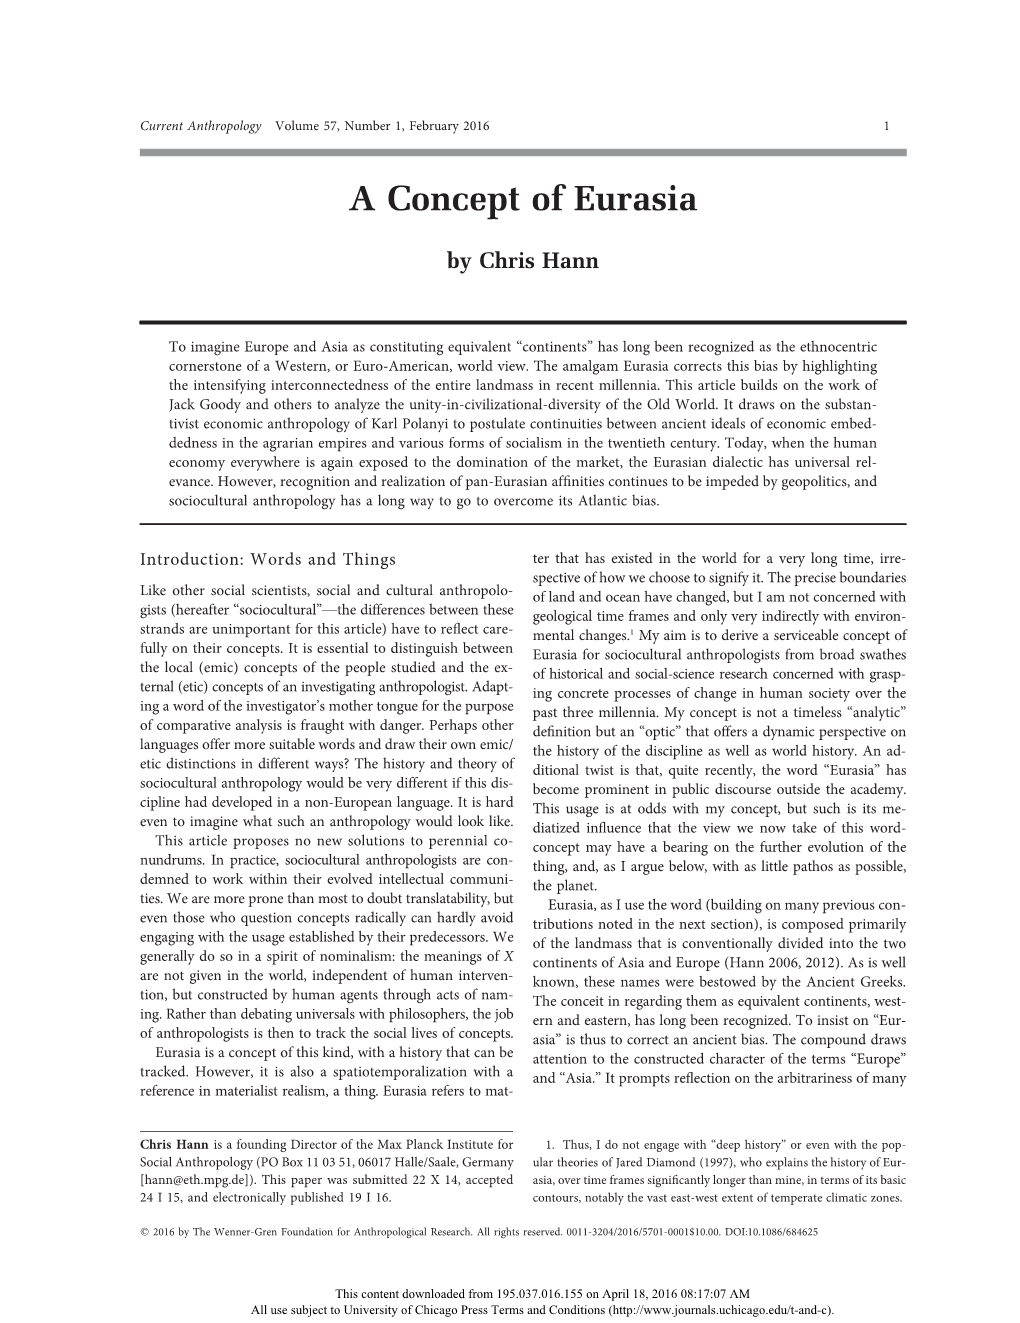 A Concept of Eurasia